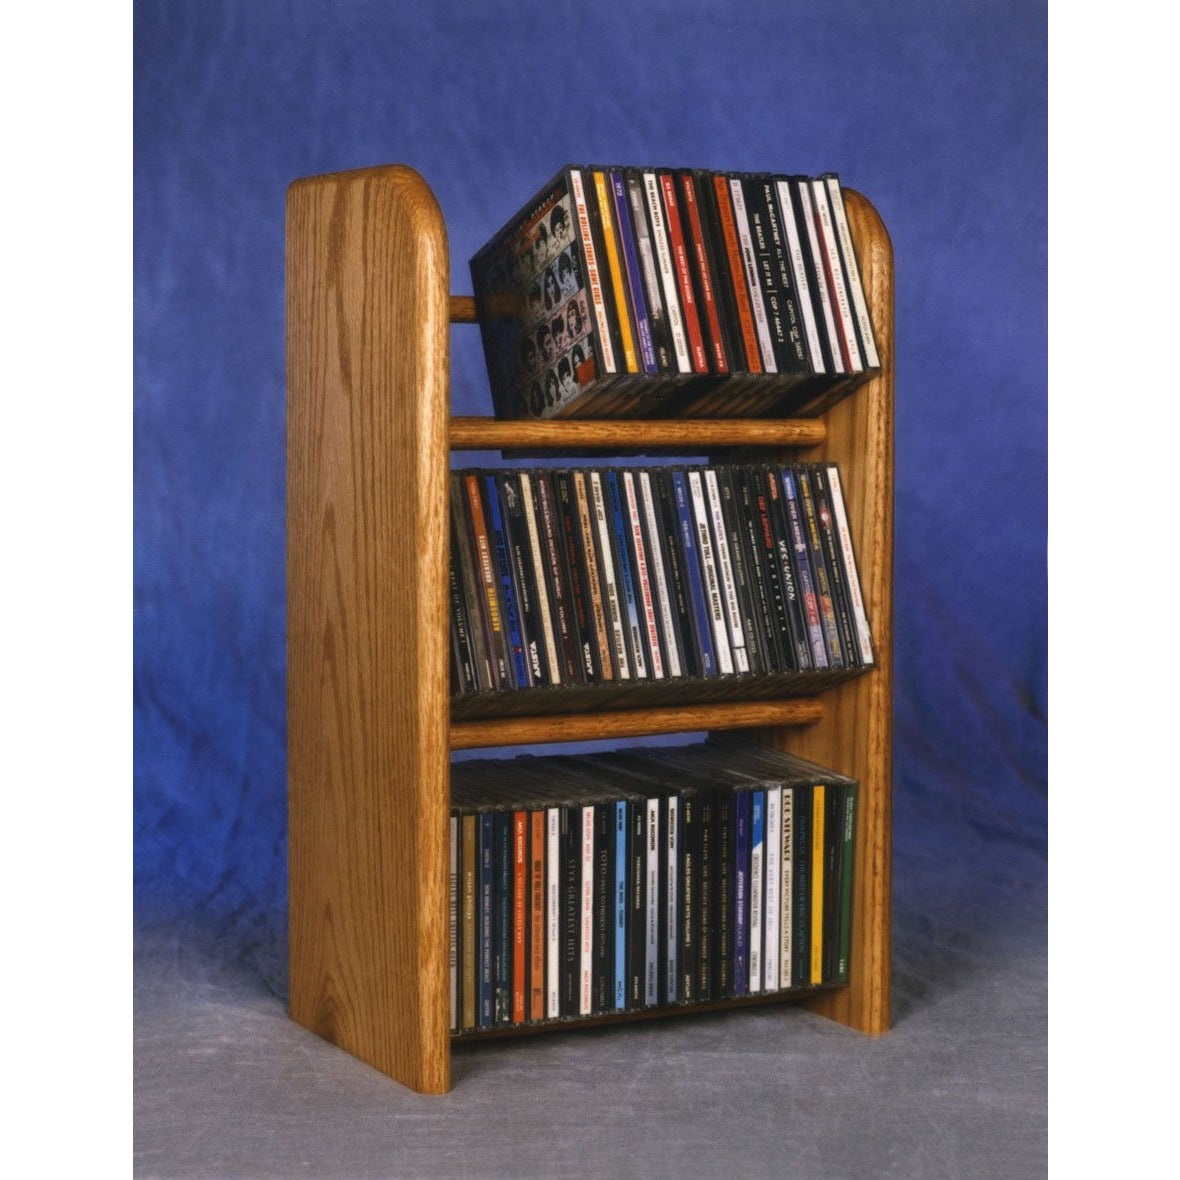 04 Series CD Storage Racks - Dowel style - 6 sizes